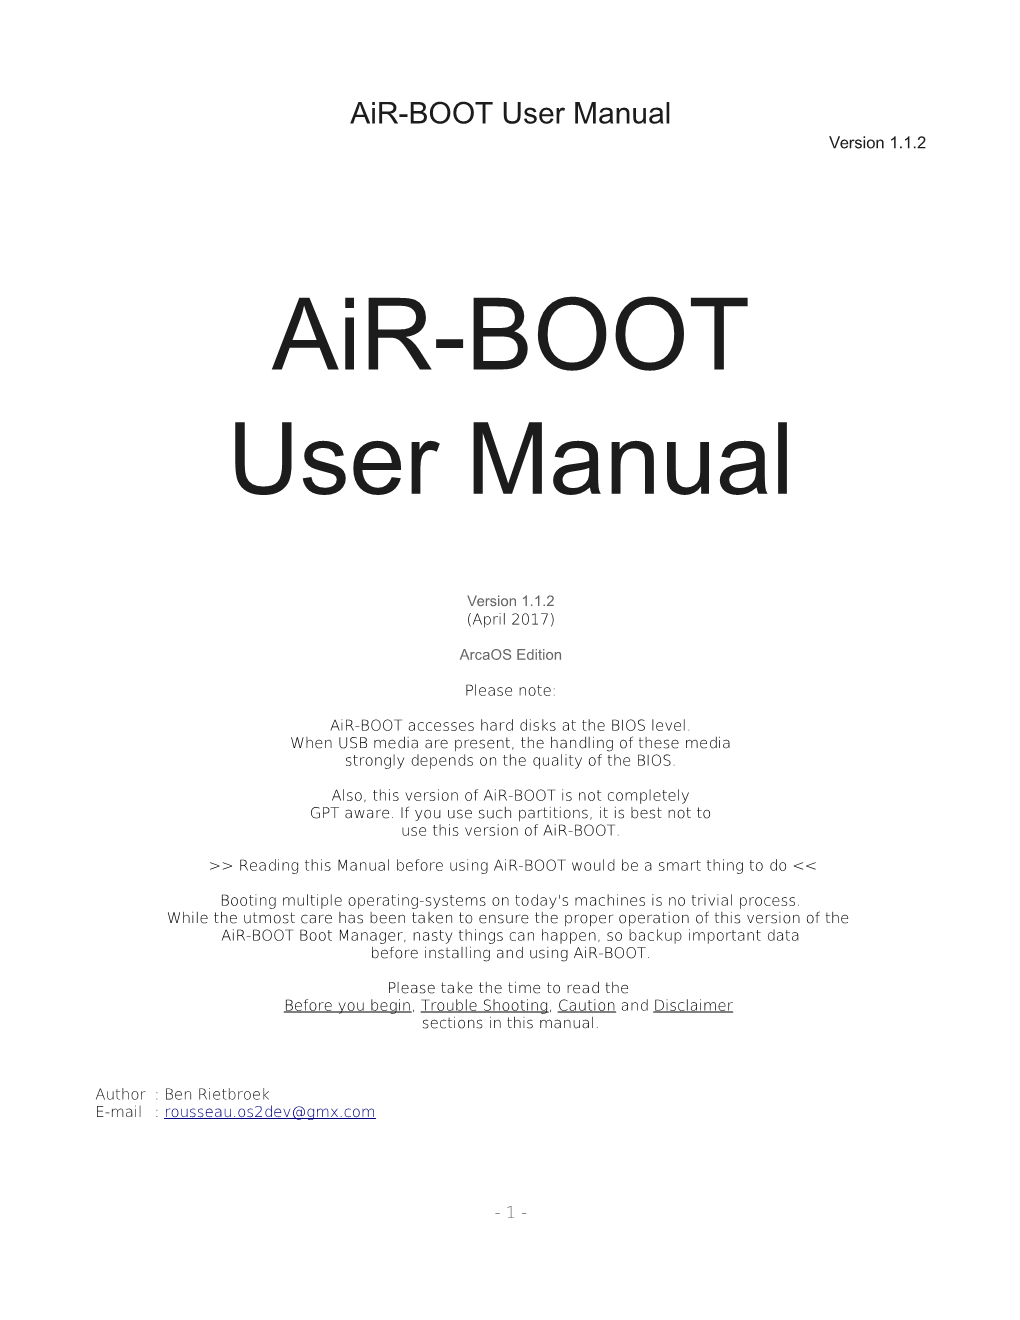 Air-BOOT User Manual Version 1.1.2